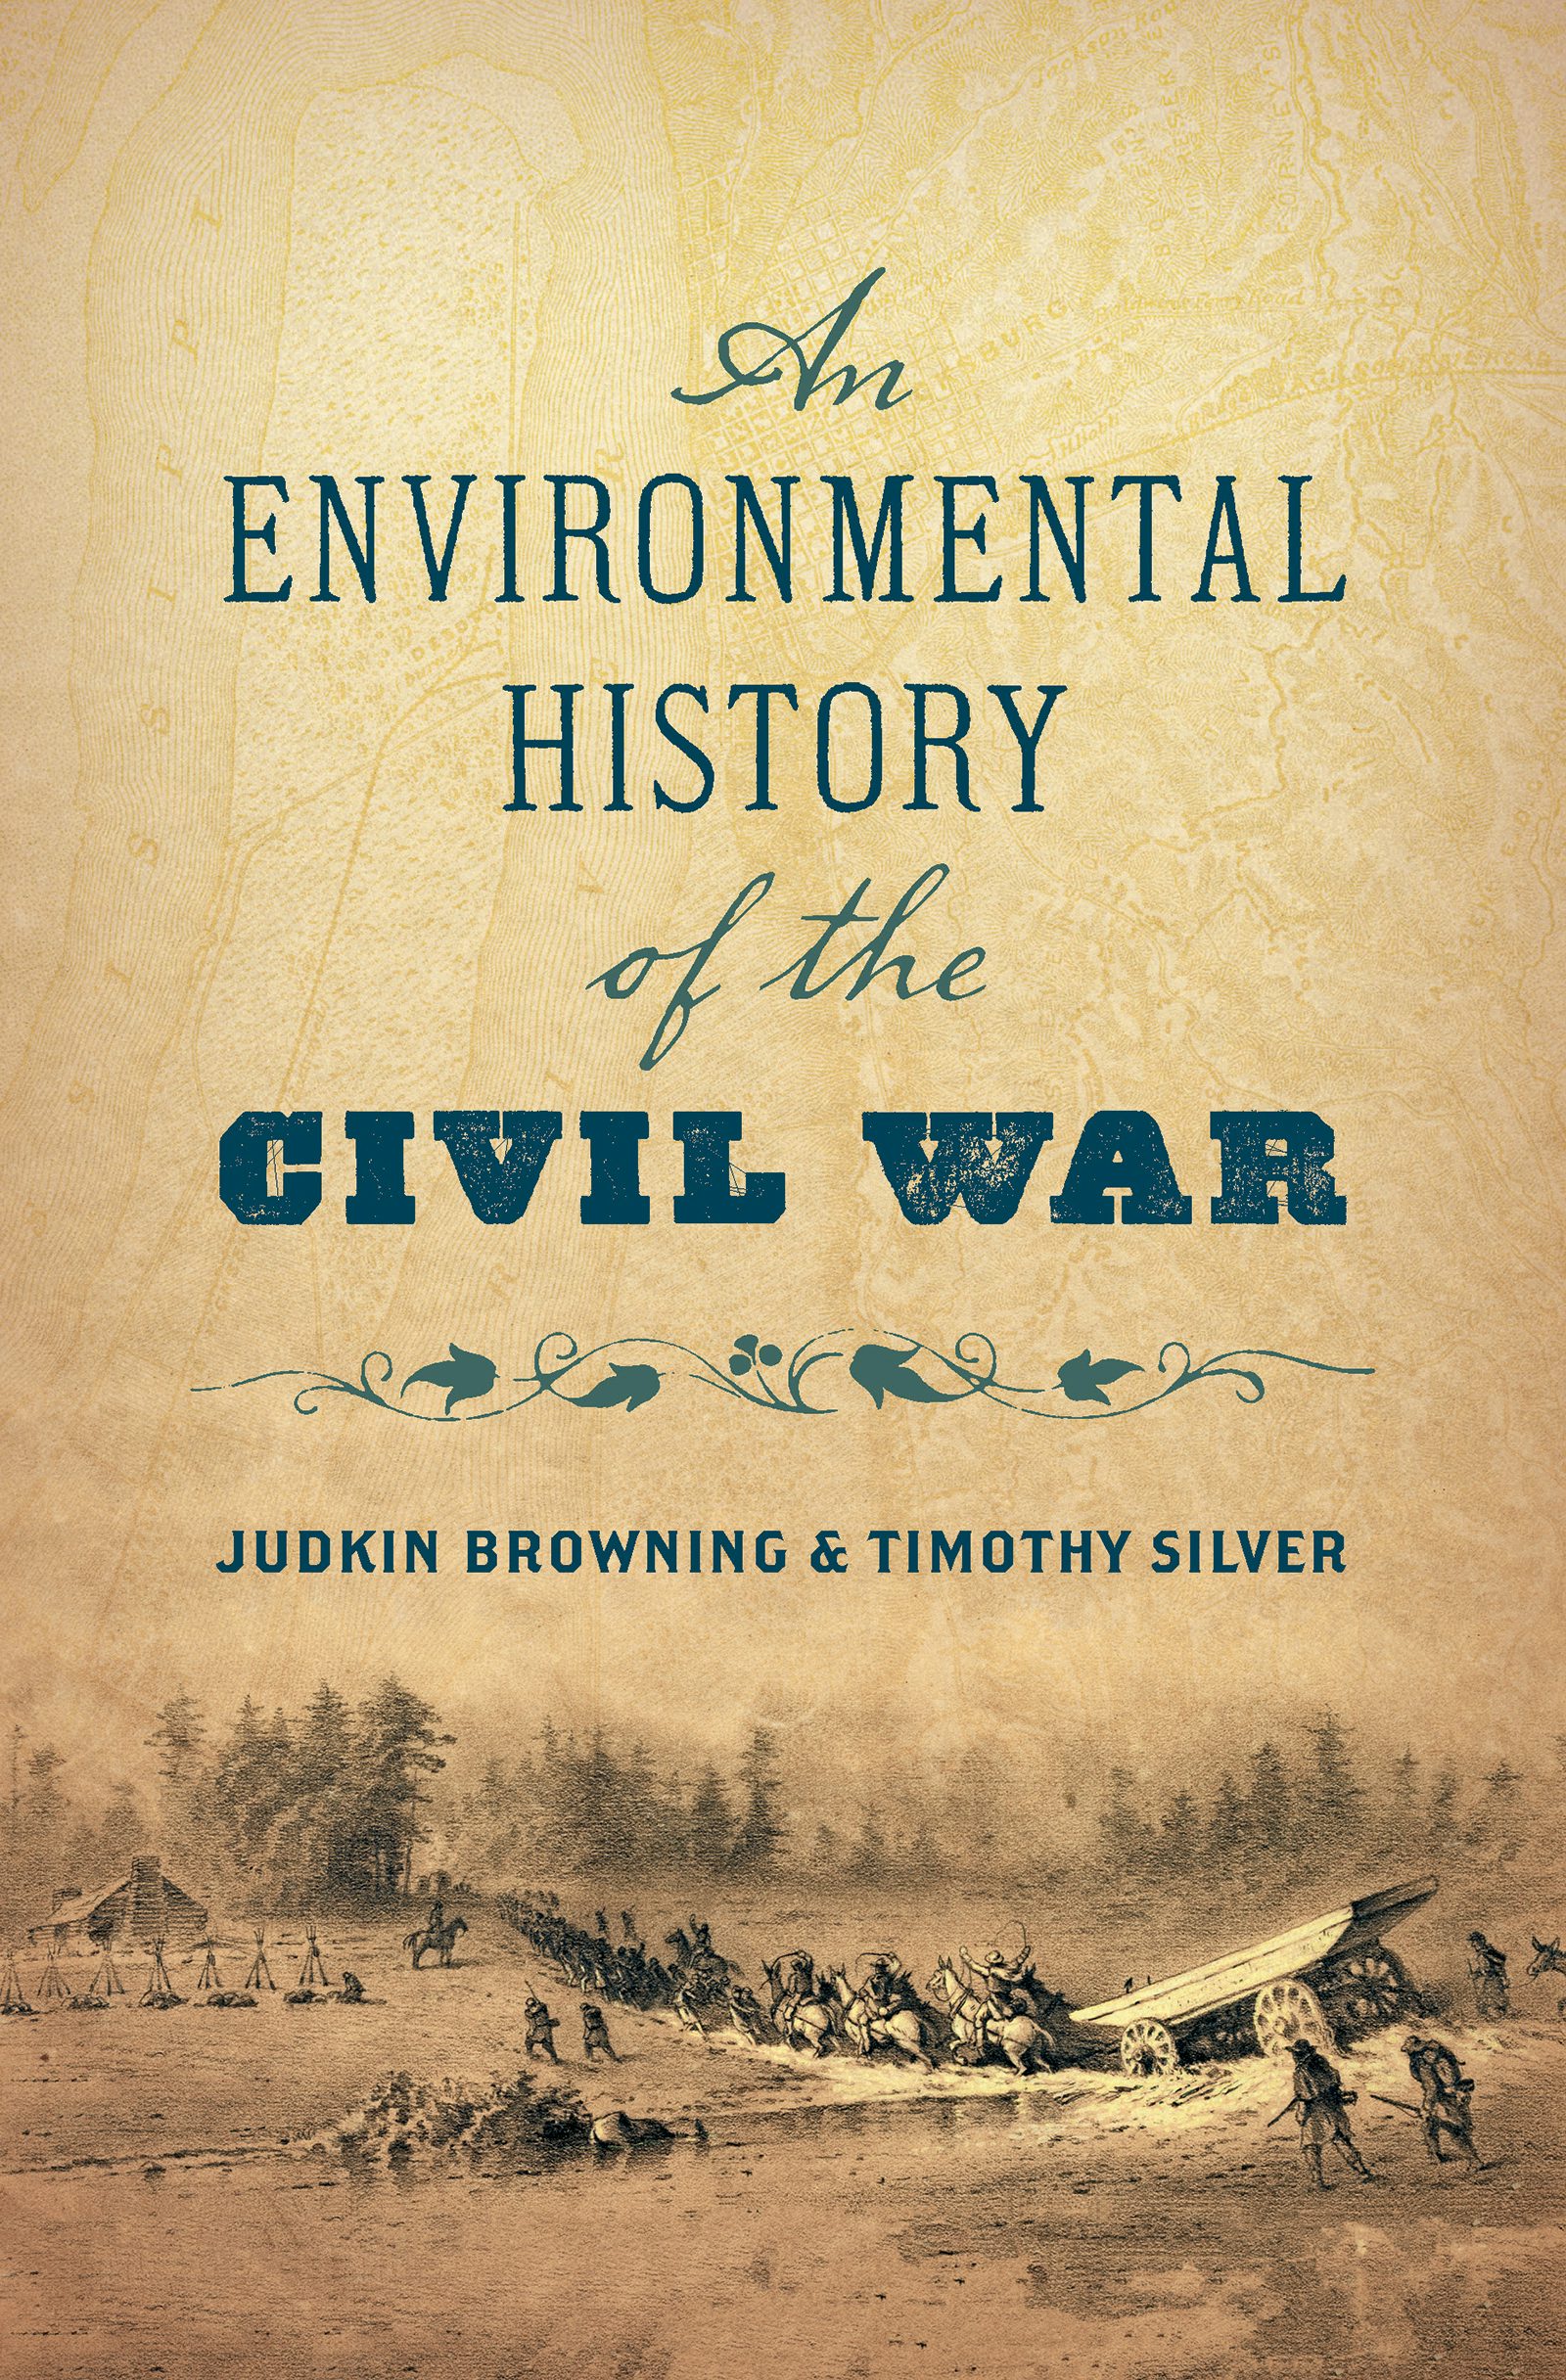  Une histoire environnementale de la Guerre civile